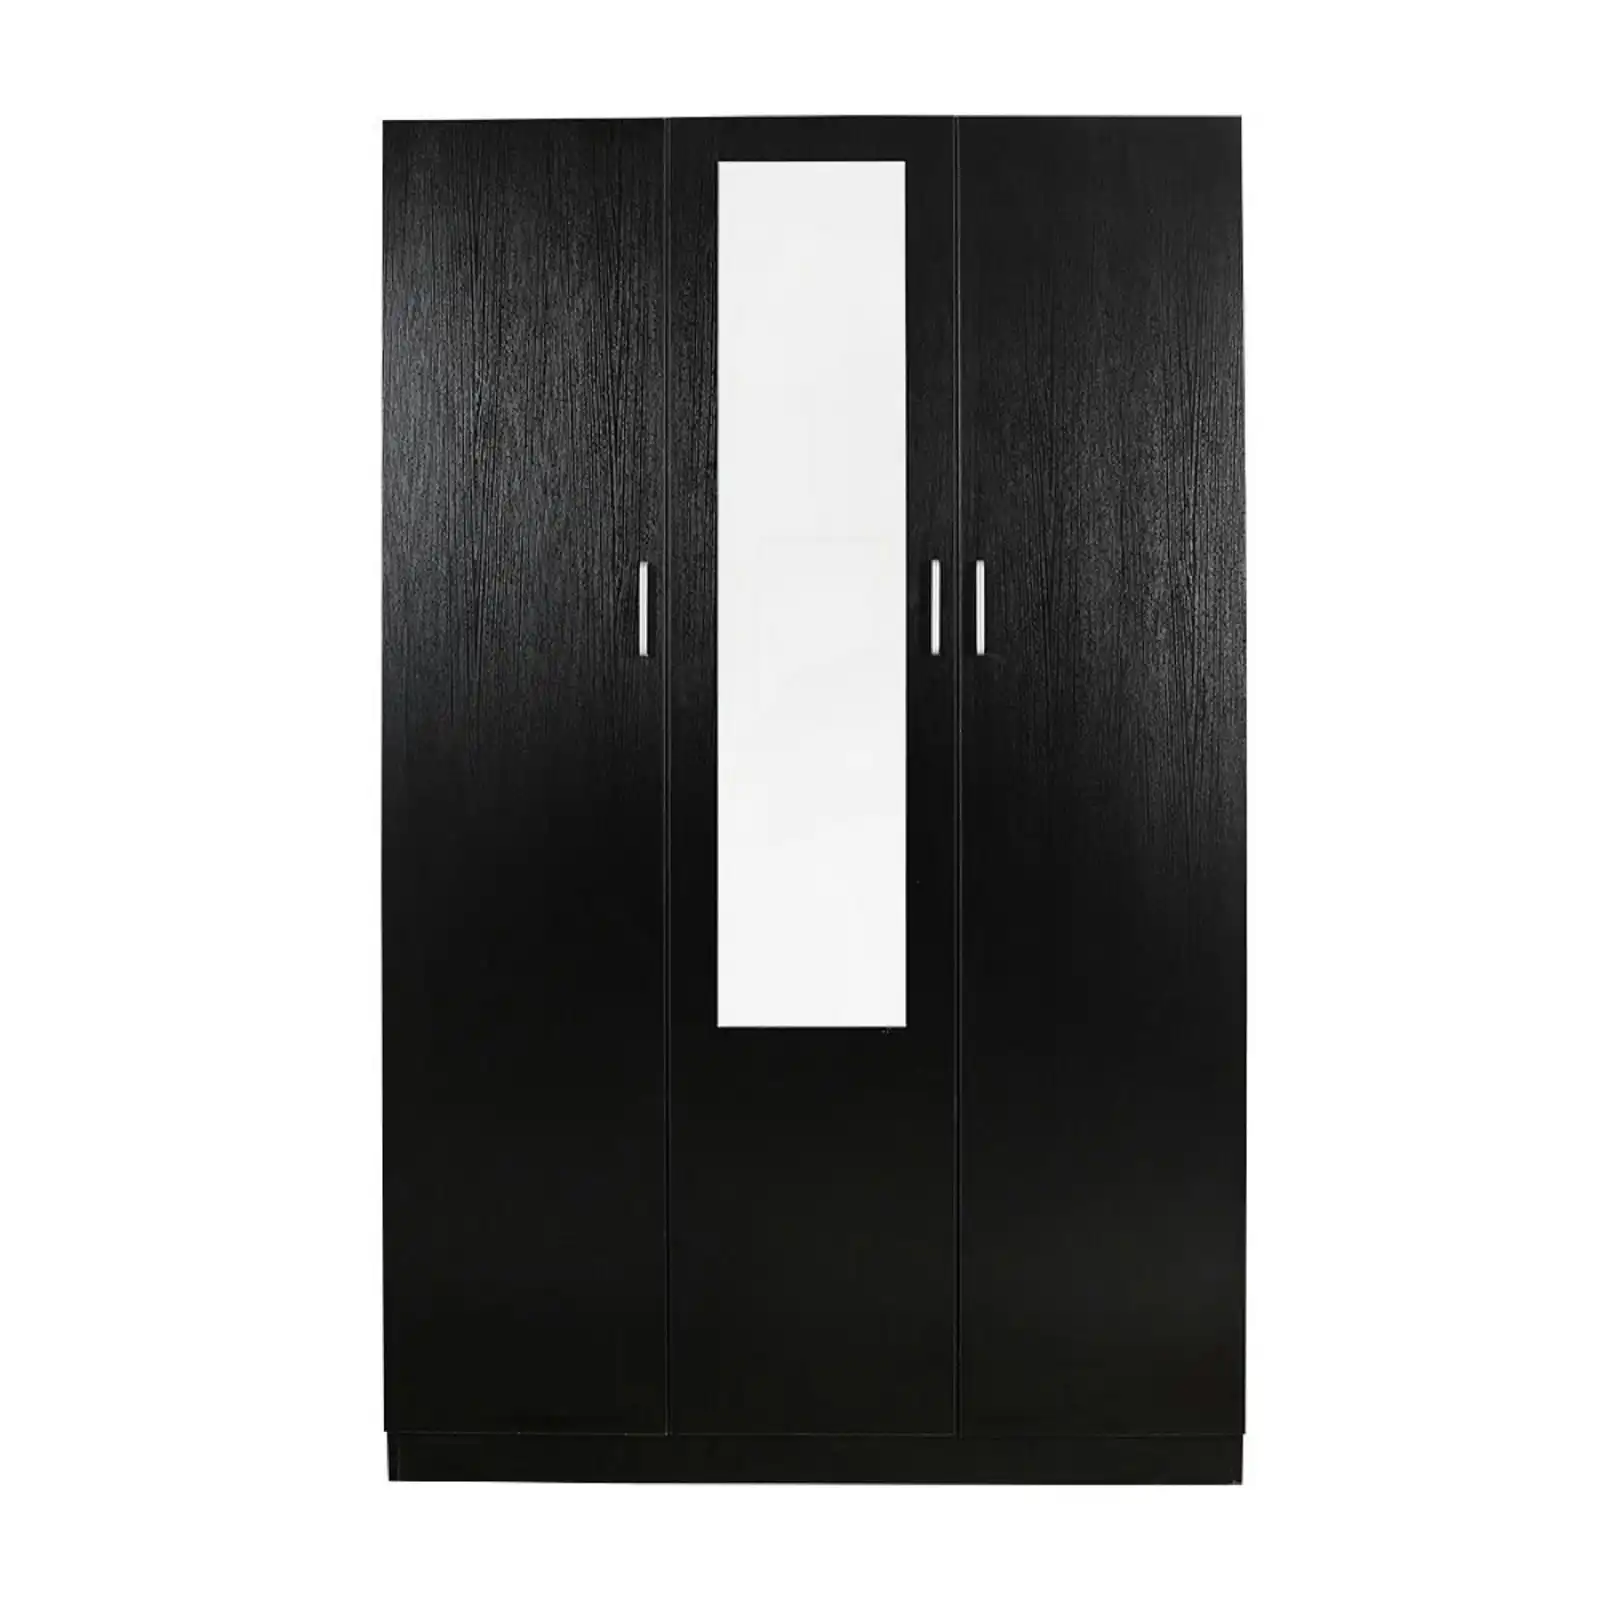 HEQS Redfern 3 Doors Combo with Mirror - Black